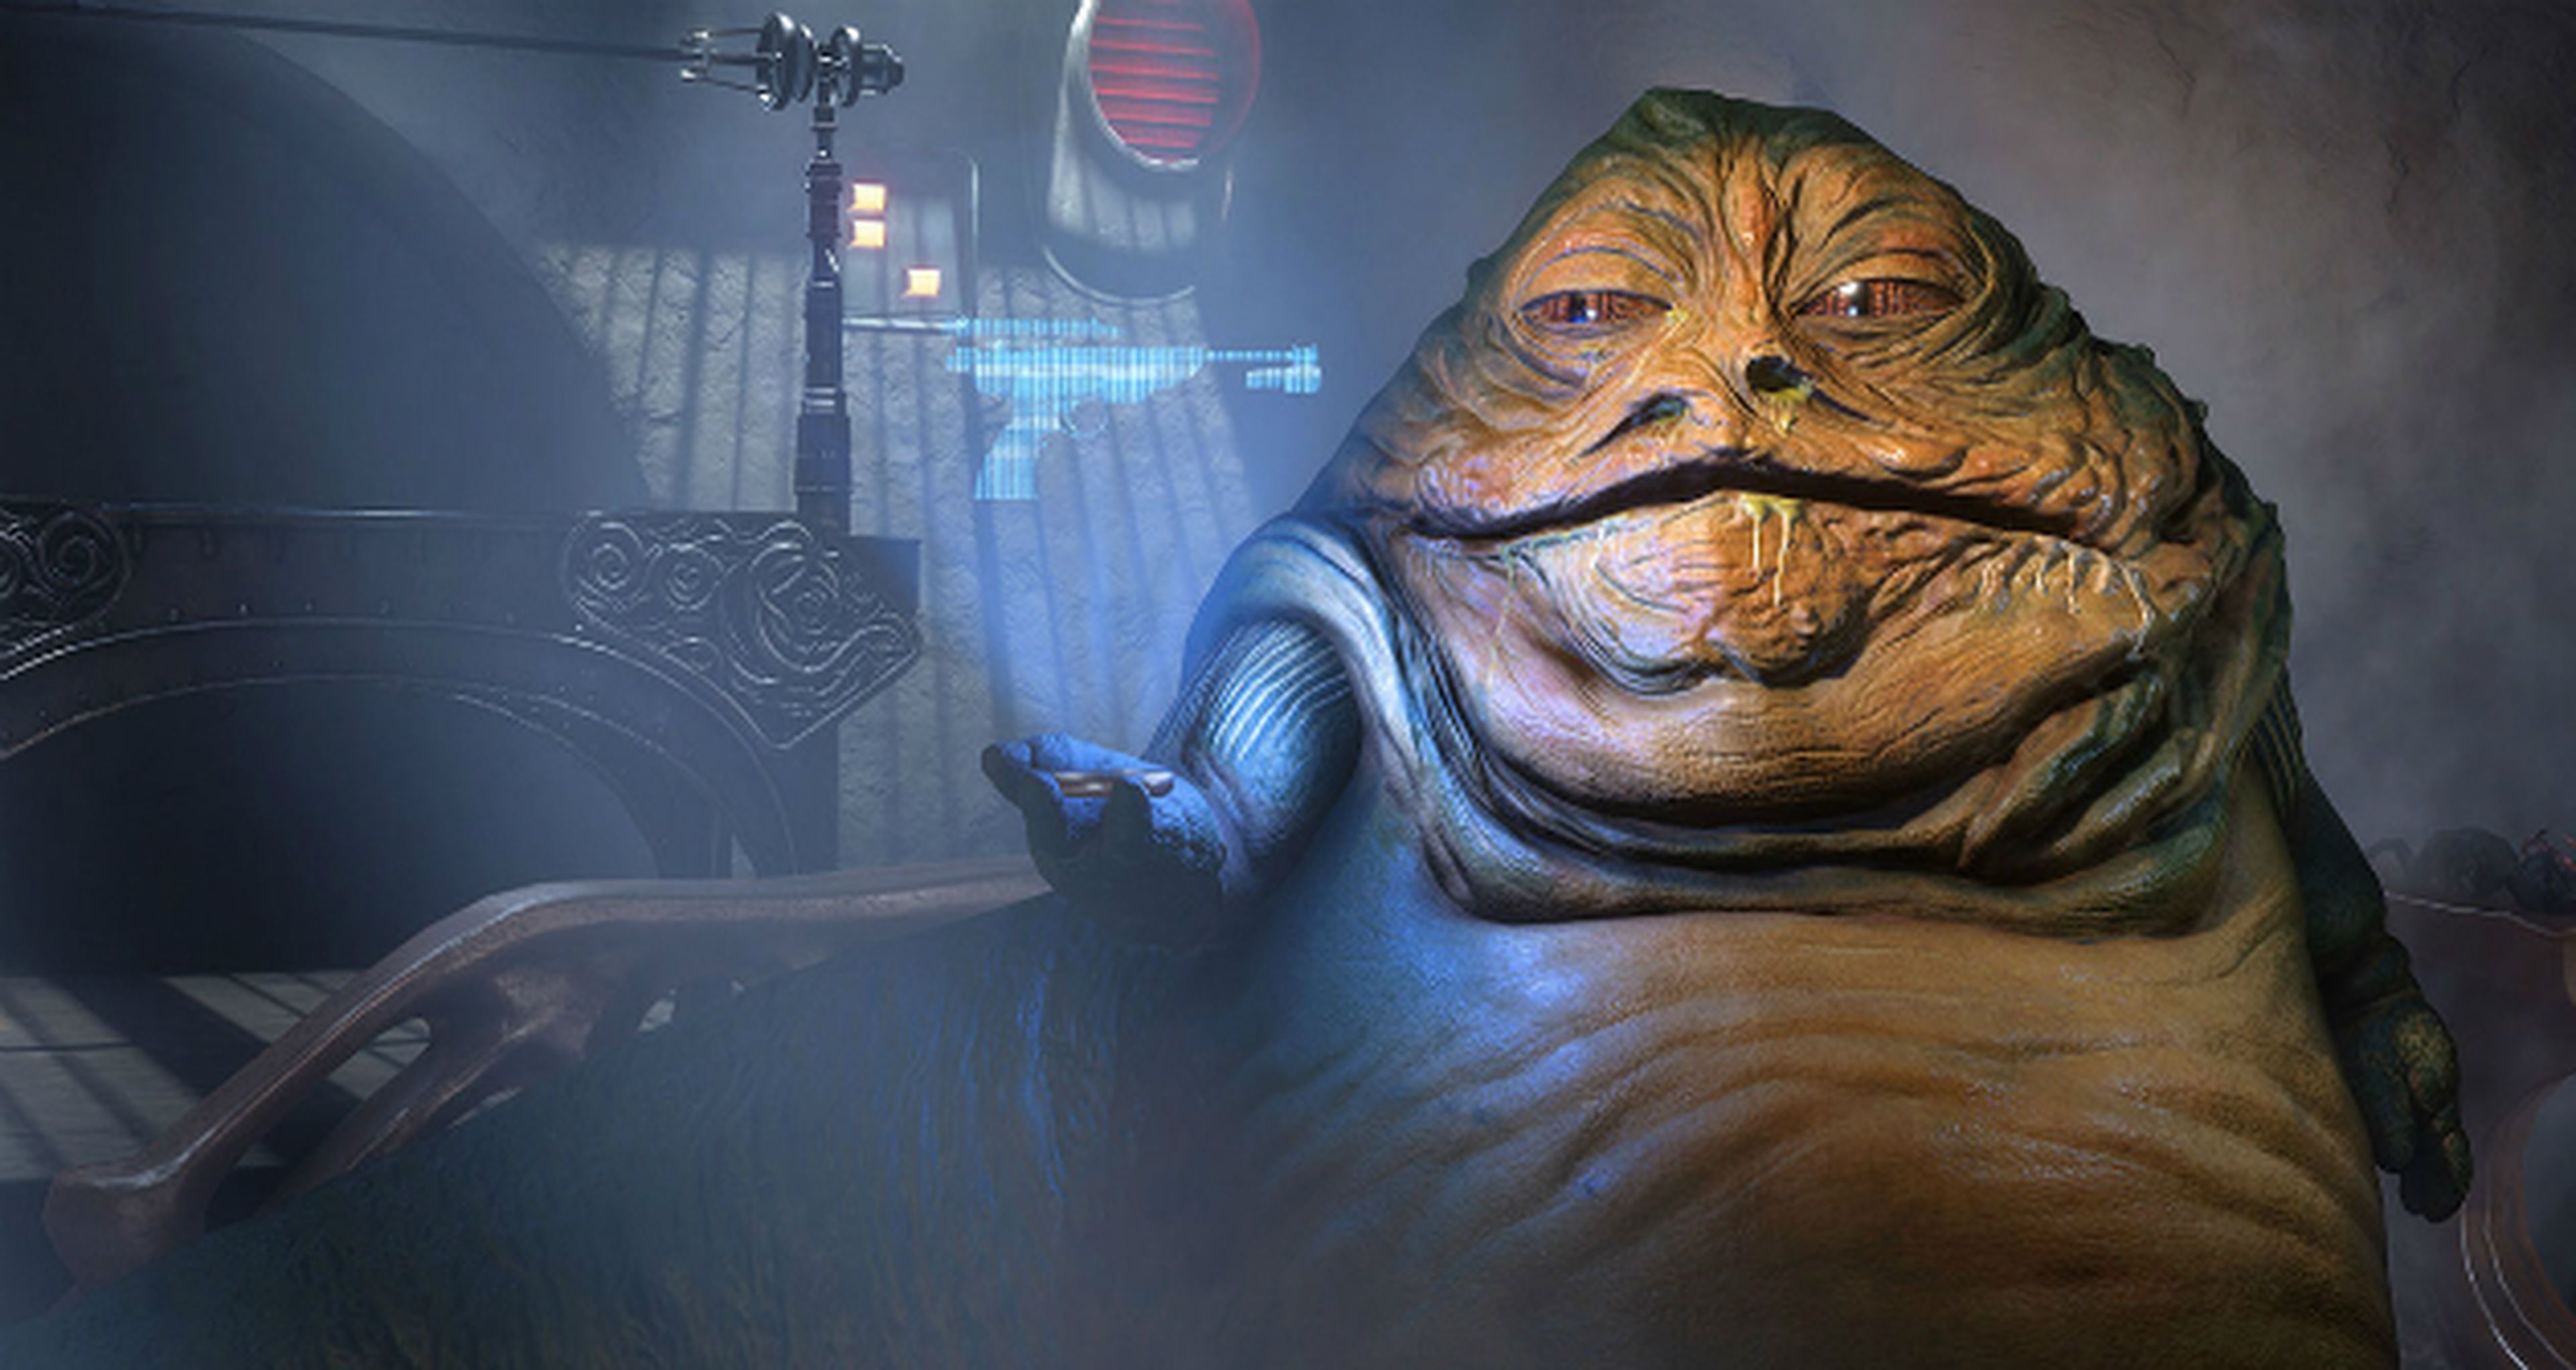 Star Wars Battlefront: Borde Exterior - Modo Escolta, contratos de Jabba el Hutt y nueva actualización